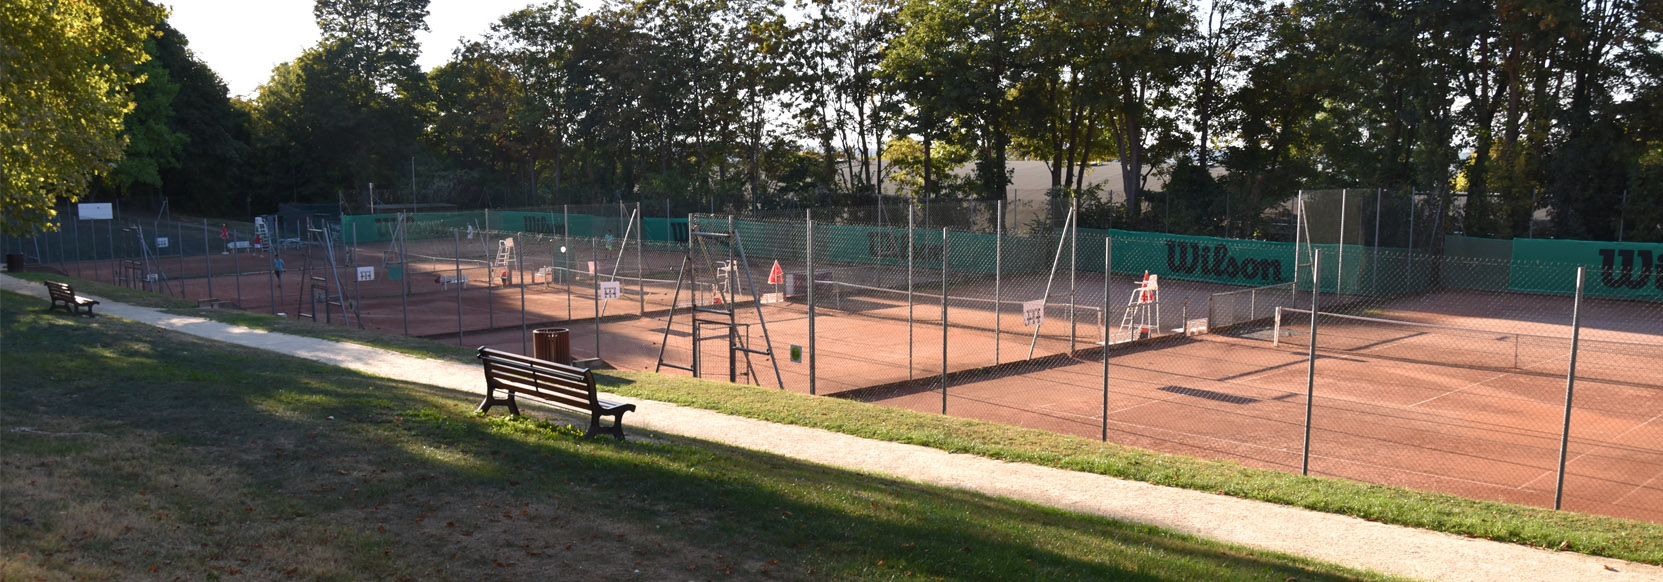 Rueil Athletic Club - Tennis - INSTALLATIONS